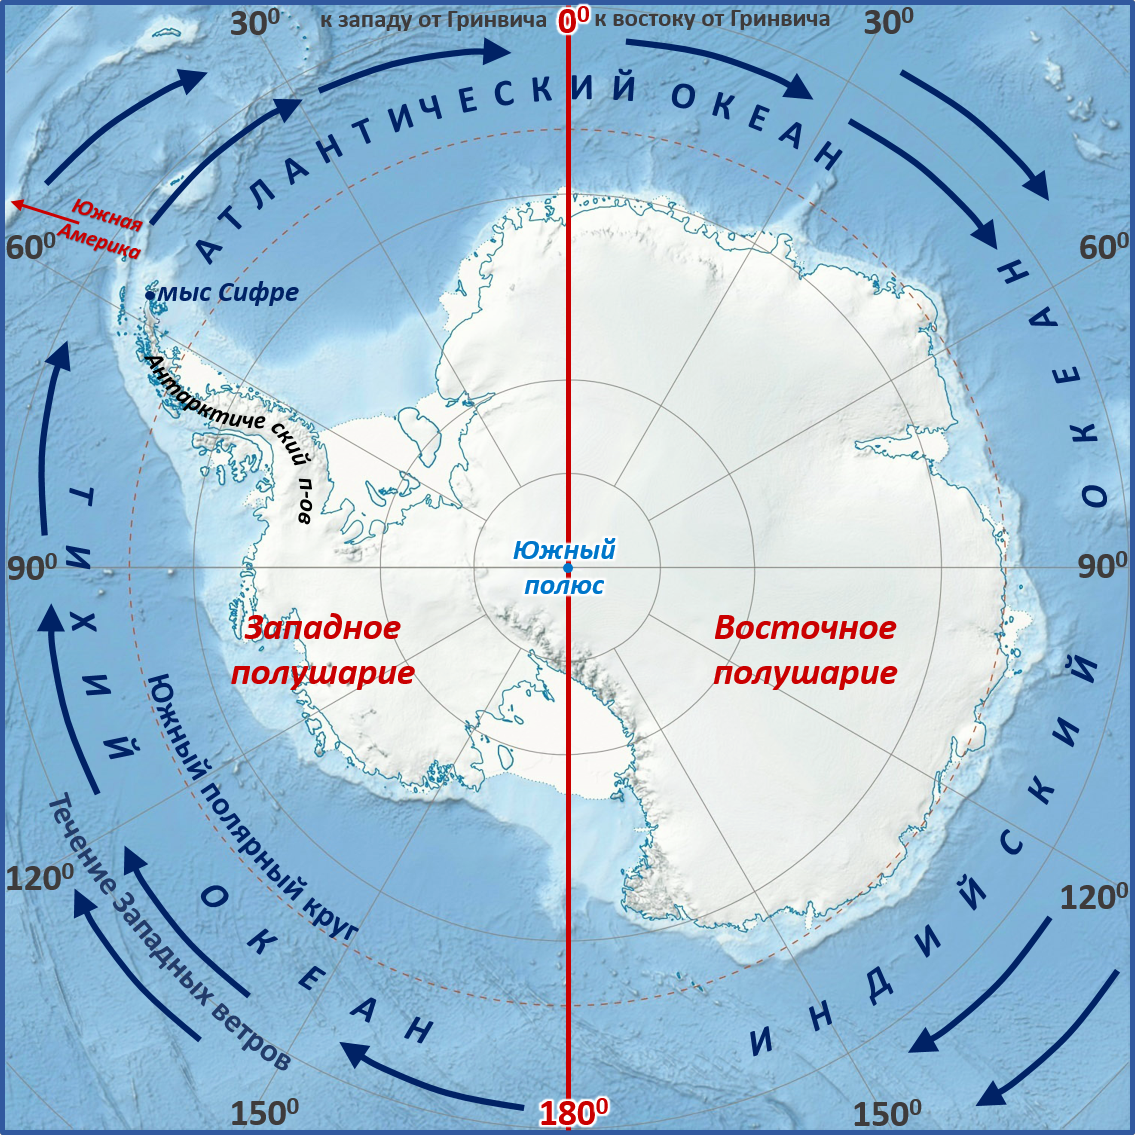 Материк расположенный в южном океане. Мыс Сифре на карте Антарктиды. Моря: Амундсена, Беллинсгаузена, Росса, Уэдделла.. Мыс Сифре Антарктида. Южный полюс на карте Антарктиды.